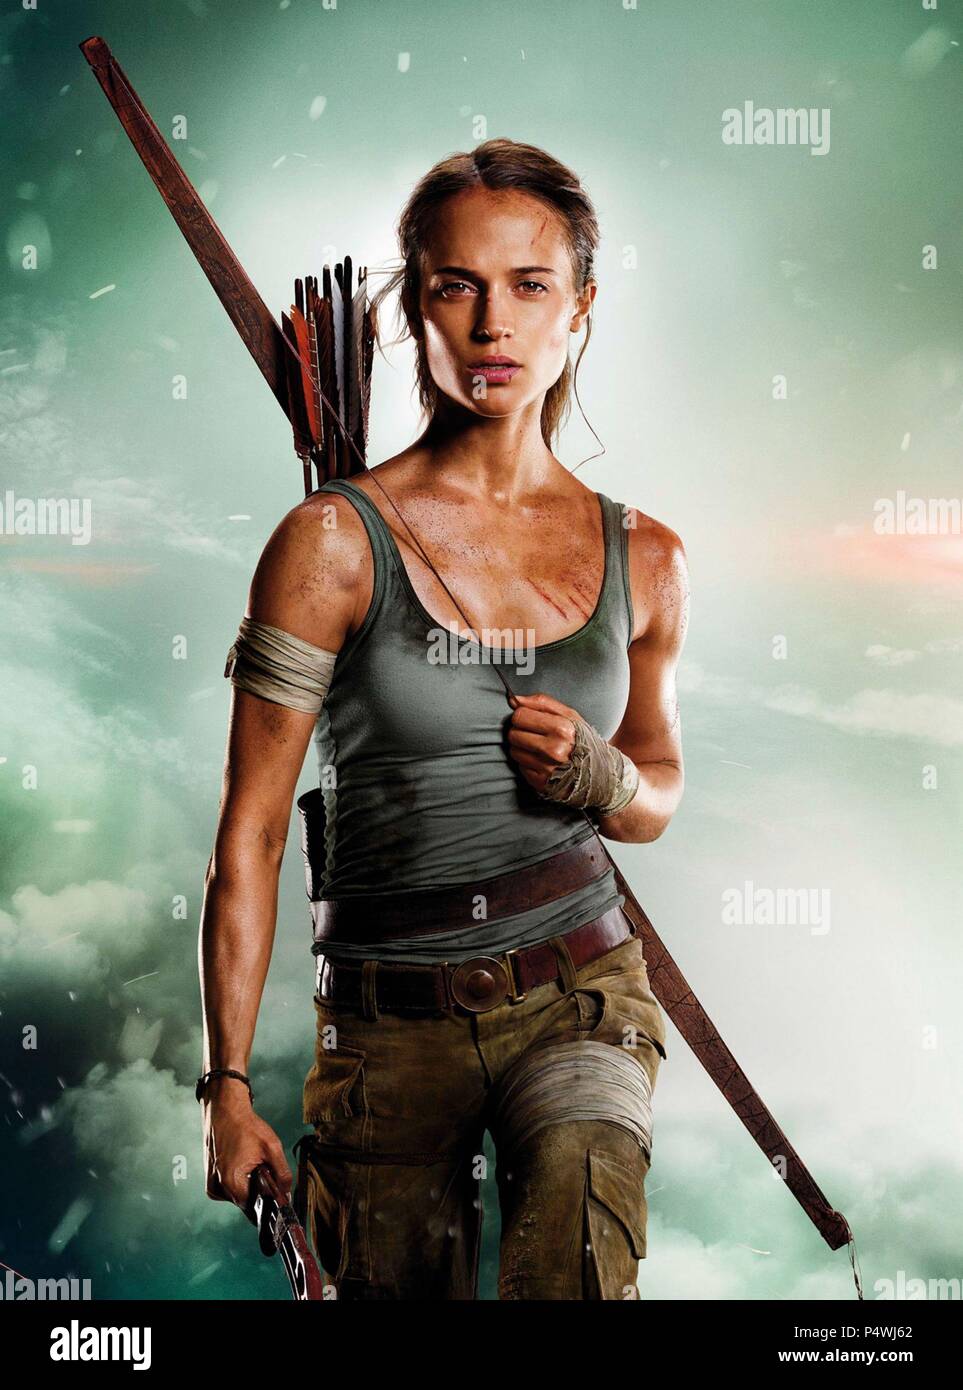 Tomb Raider (film) - Wikipedia